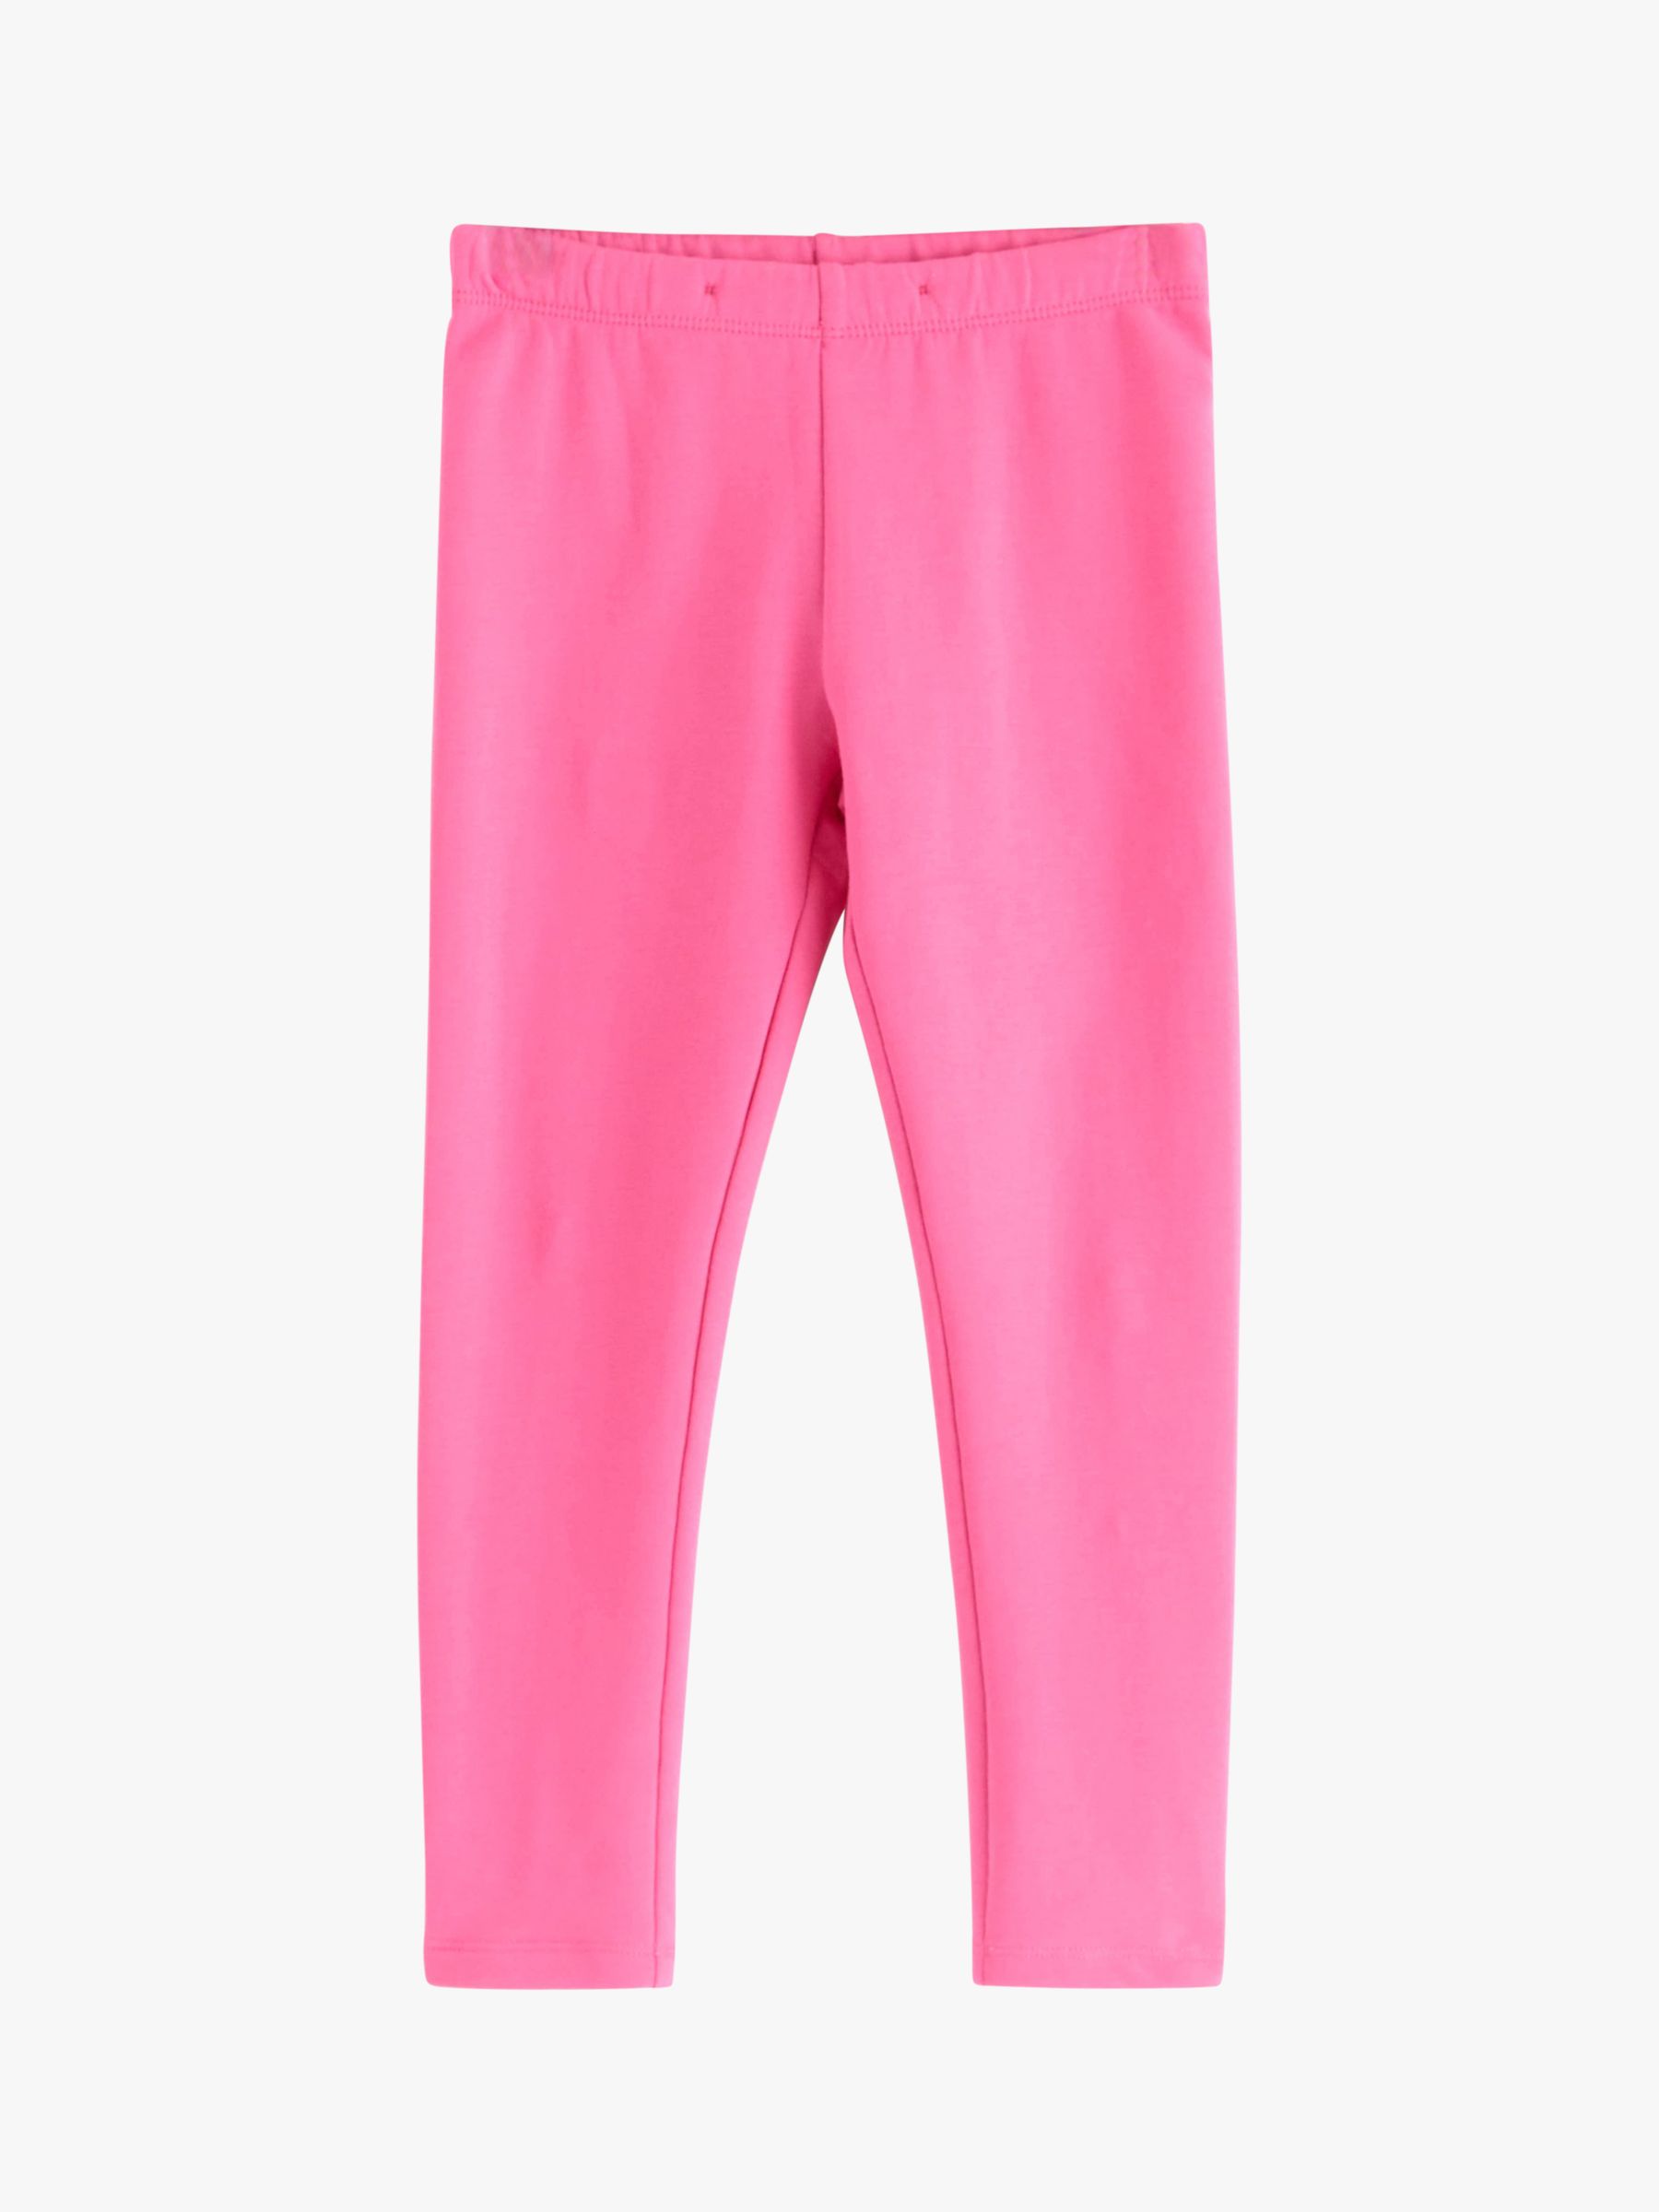 Lindex Kids' Basic Organic Cotton Blend Leggings, Bright Pink at John ...